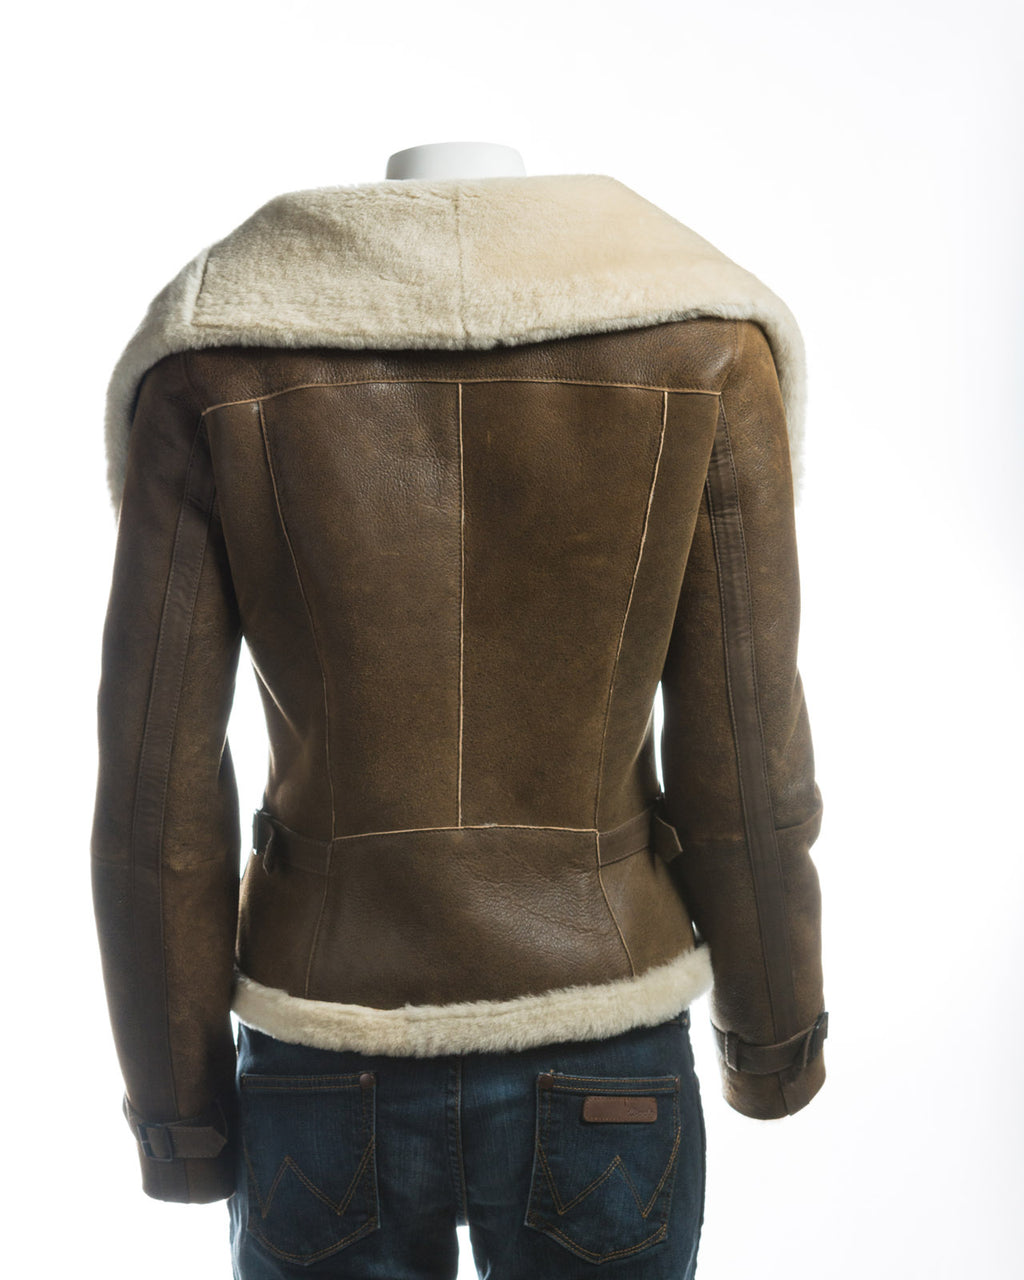 Ladies Antique Tan Sheepskin Jacket With Oversized Collar: Rita